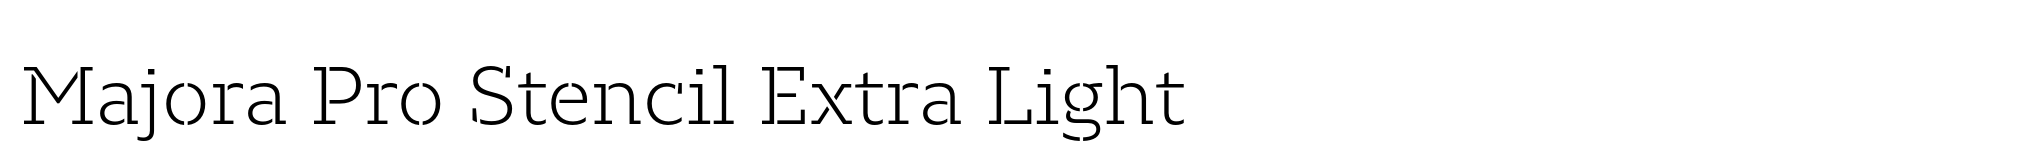 Majora Pro Stencil Extra Light image